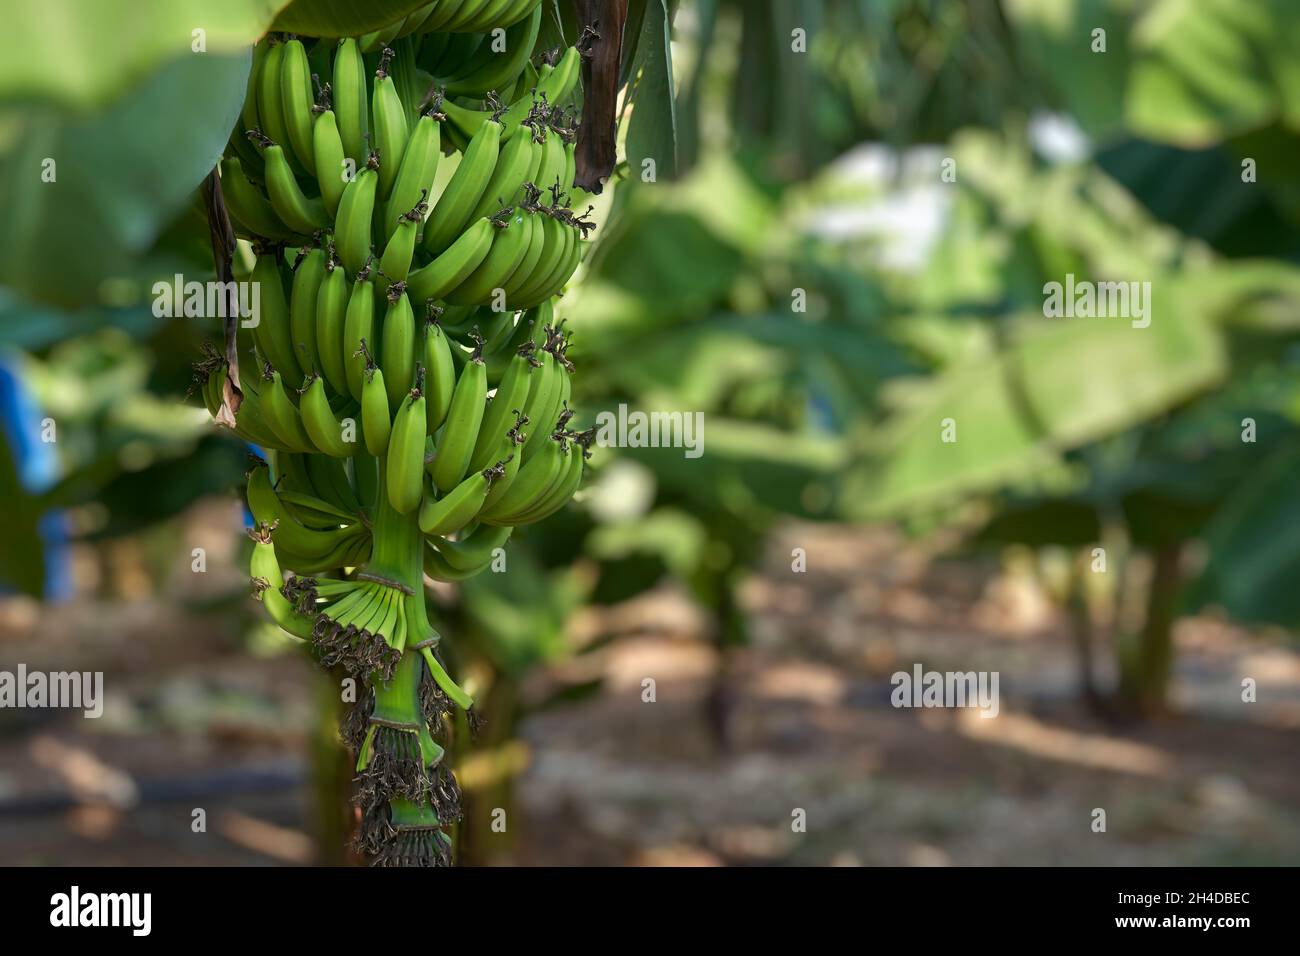 Bouquet de bananes vertes non mûres poussant sur un arbre dans une plantation à Chypre Banque D'Images